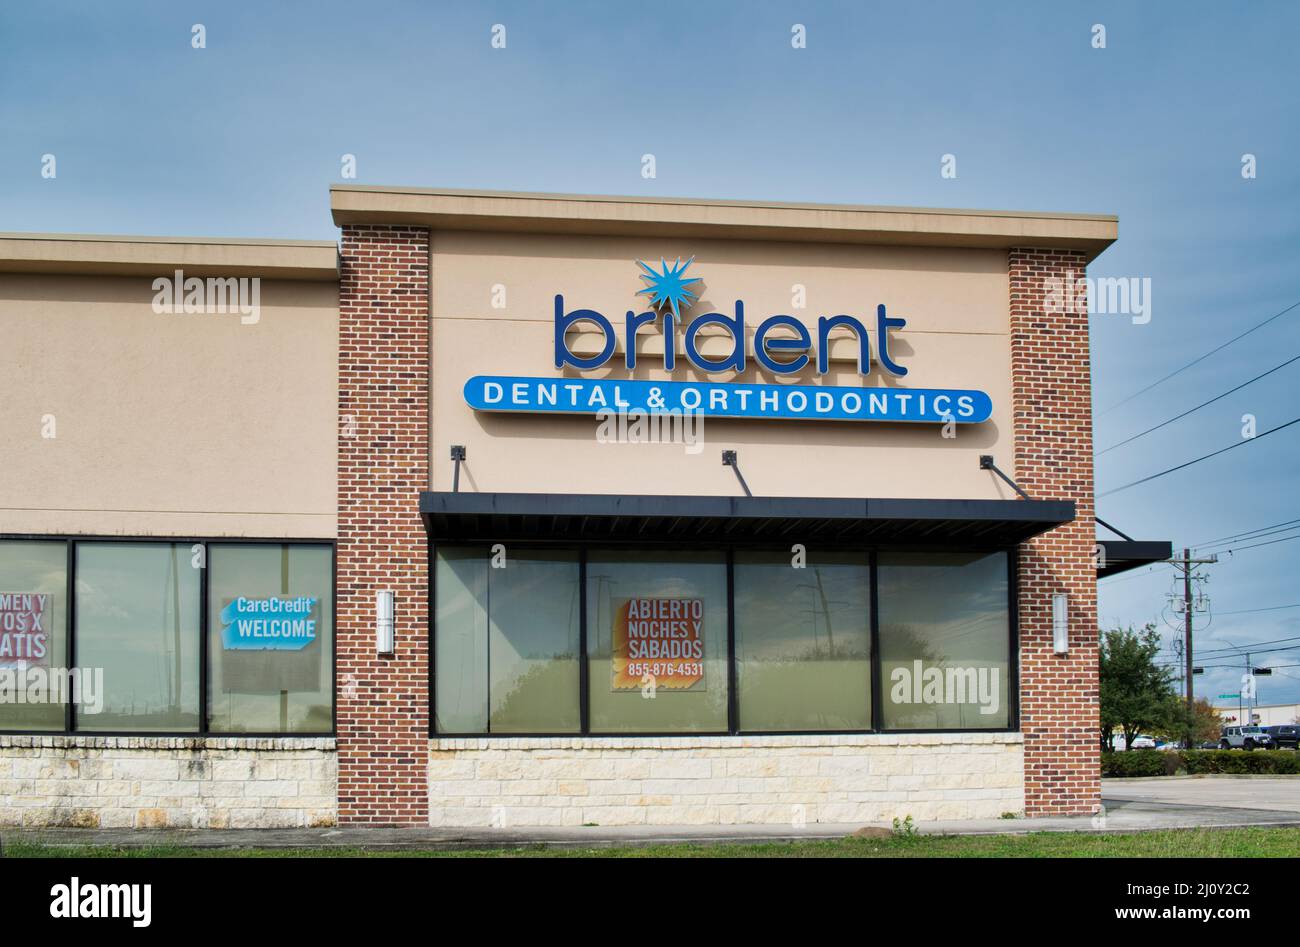 Houston, Texas USA 12-05-2021: Brident Dental and Kieferorthopädie Bürogebäude außen in Houston, TX. Gesundheit und Wellness lokale Business-Kette. Stockfoto